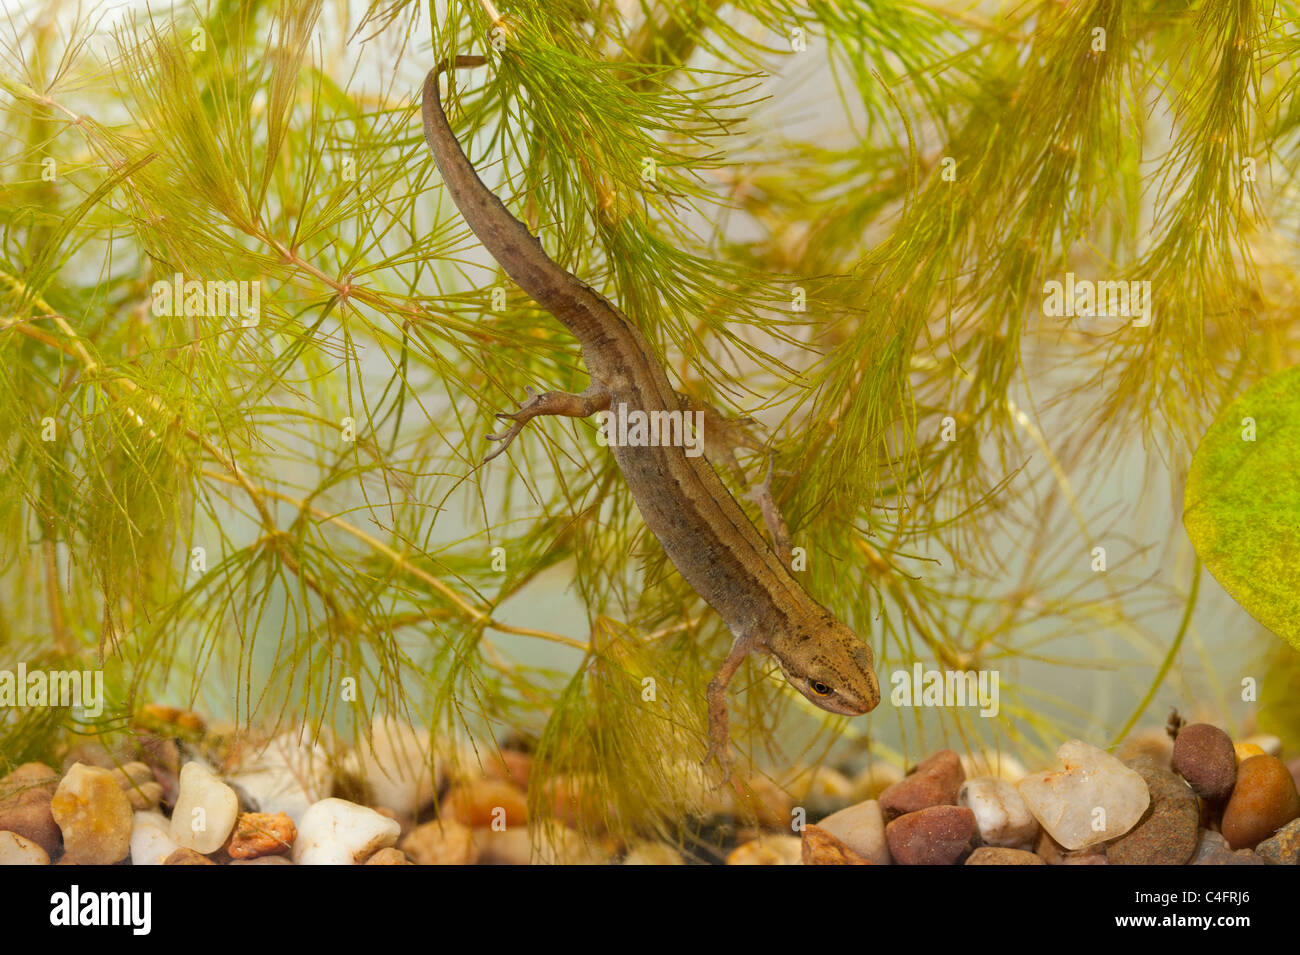 Une femelle Triton tacheté ( Triturus vulgaris ) nager dans un aquarium au Royaume-Uni Banque D'Images